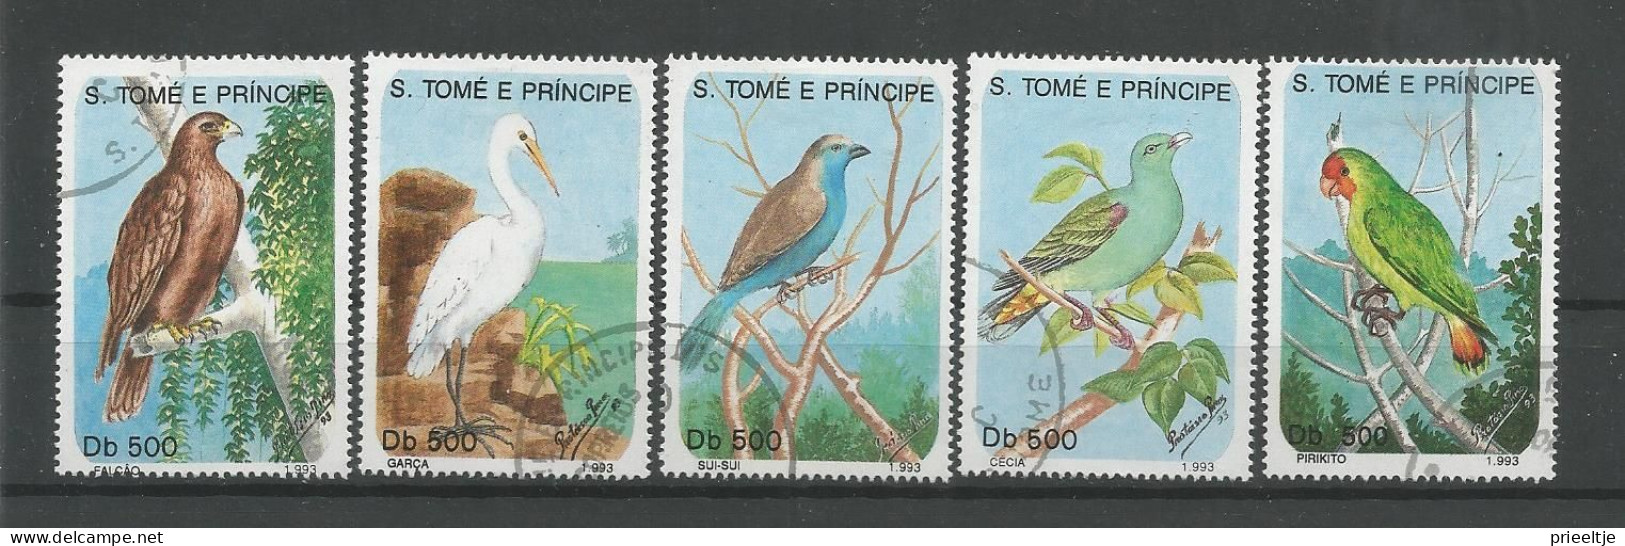 St Tome E Principe 1993 Birds  Y.T. 1157/1161 (0) - Sao Tome And Principe